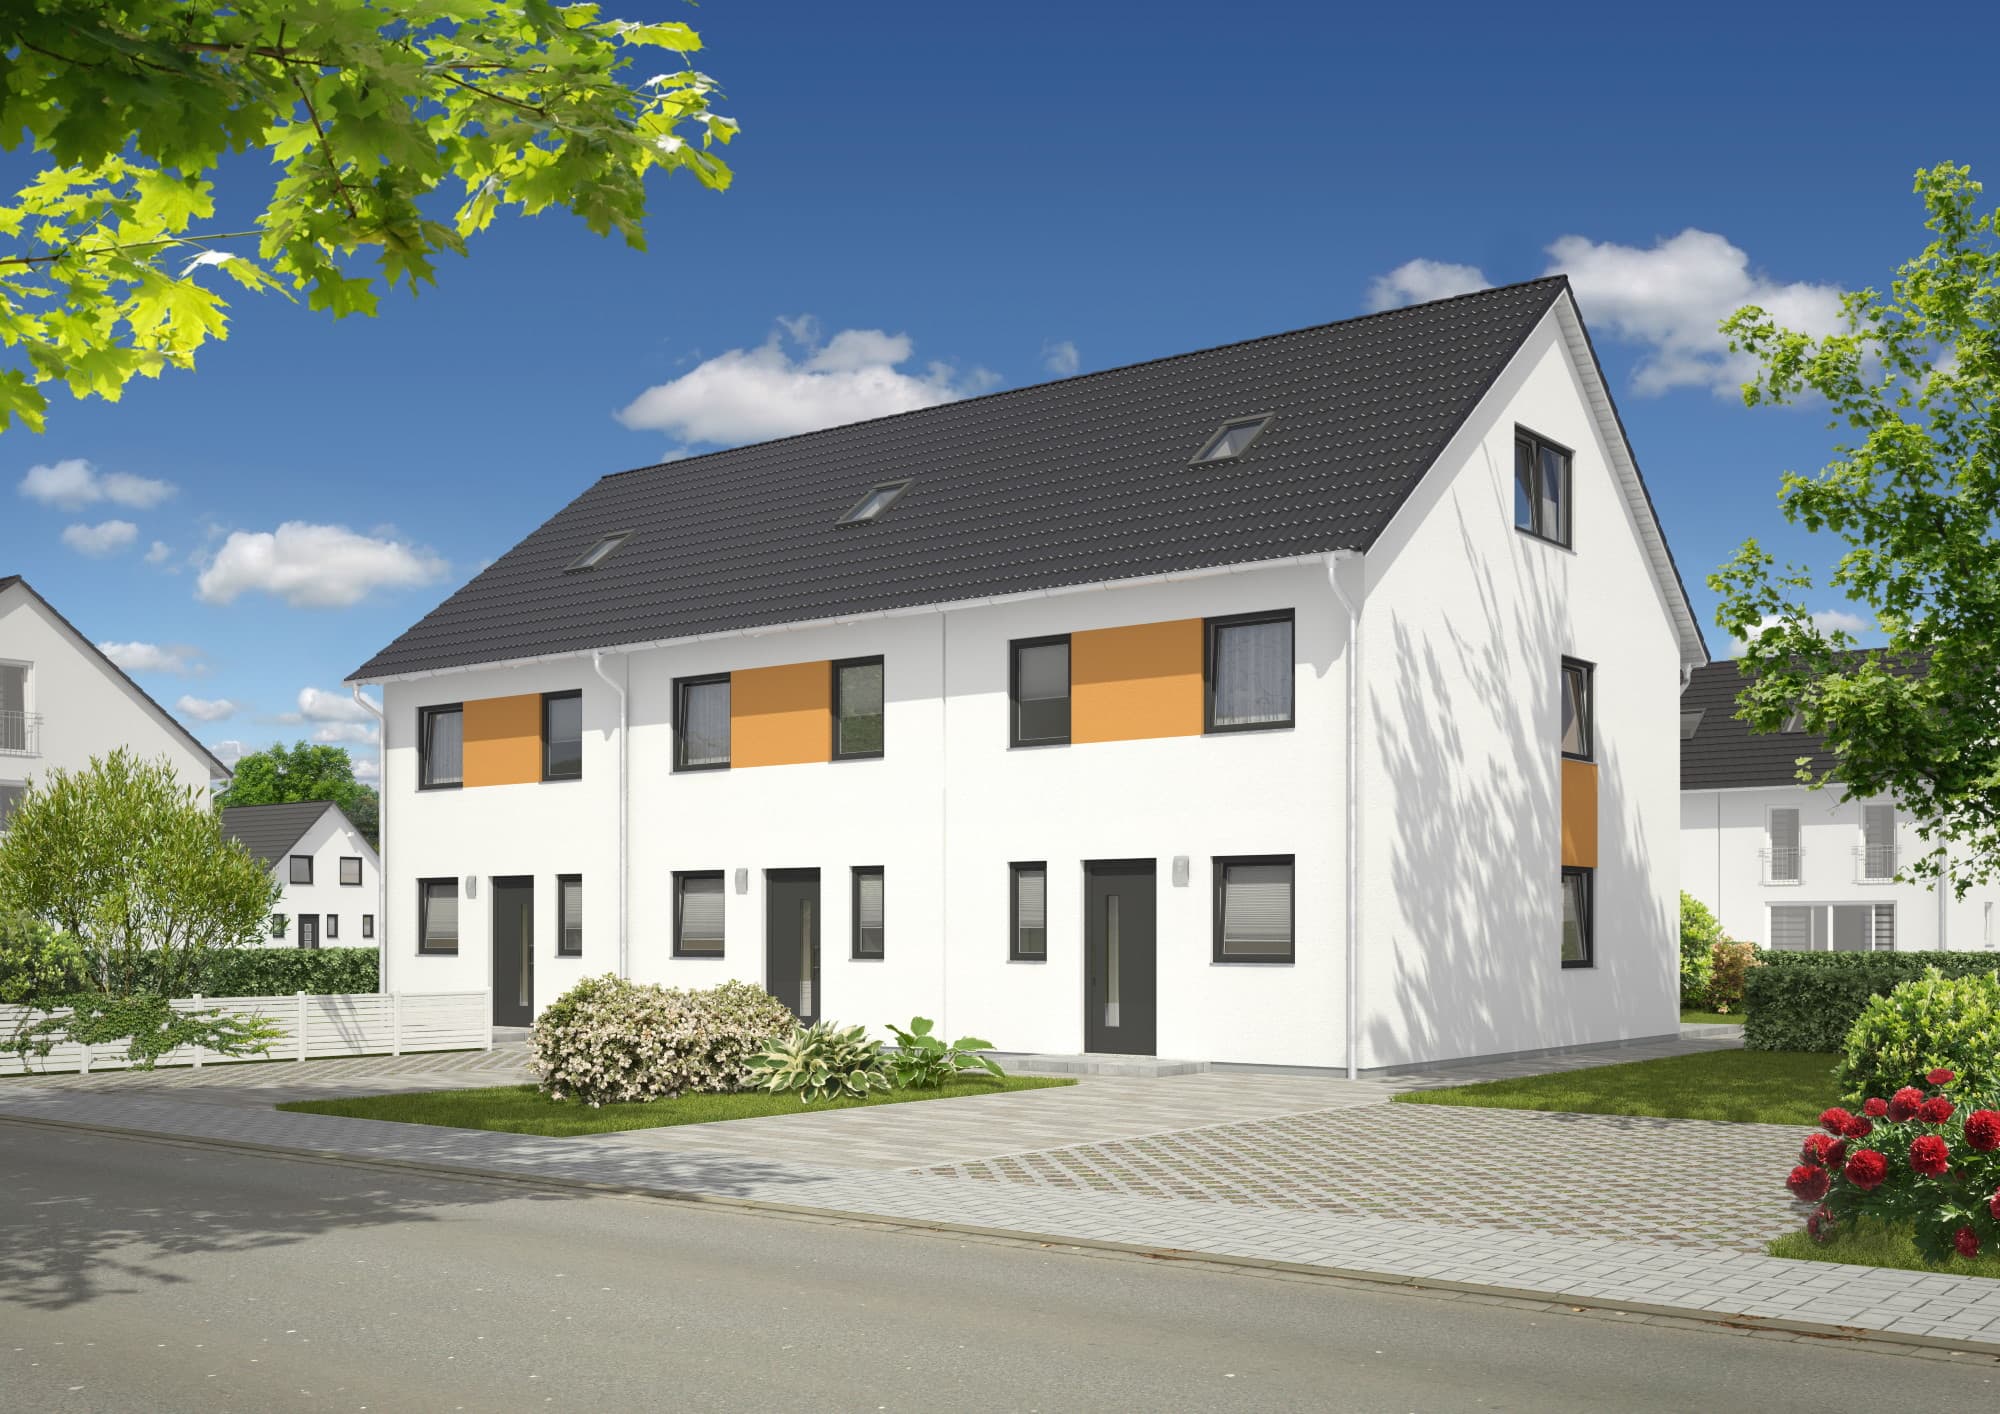 Reihenhaus mit Satteldach Architektur - Massivhaus bauen Ideen Town Country Haus Mainz 128 Style - HausbauDirekt.de